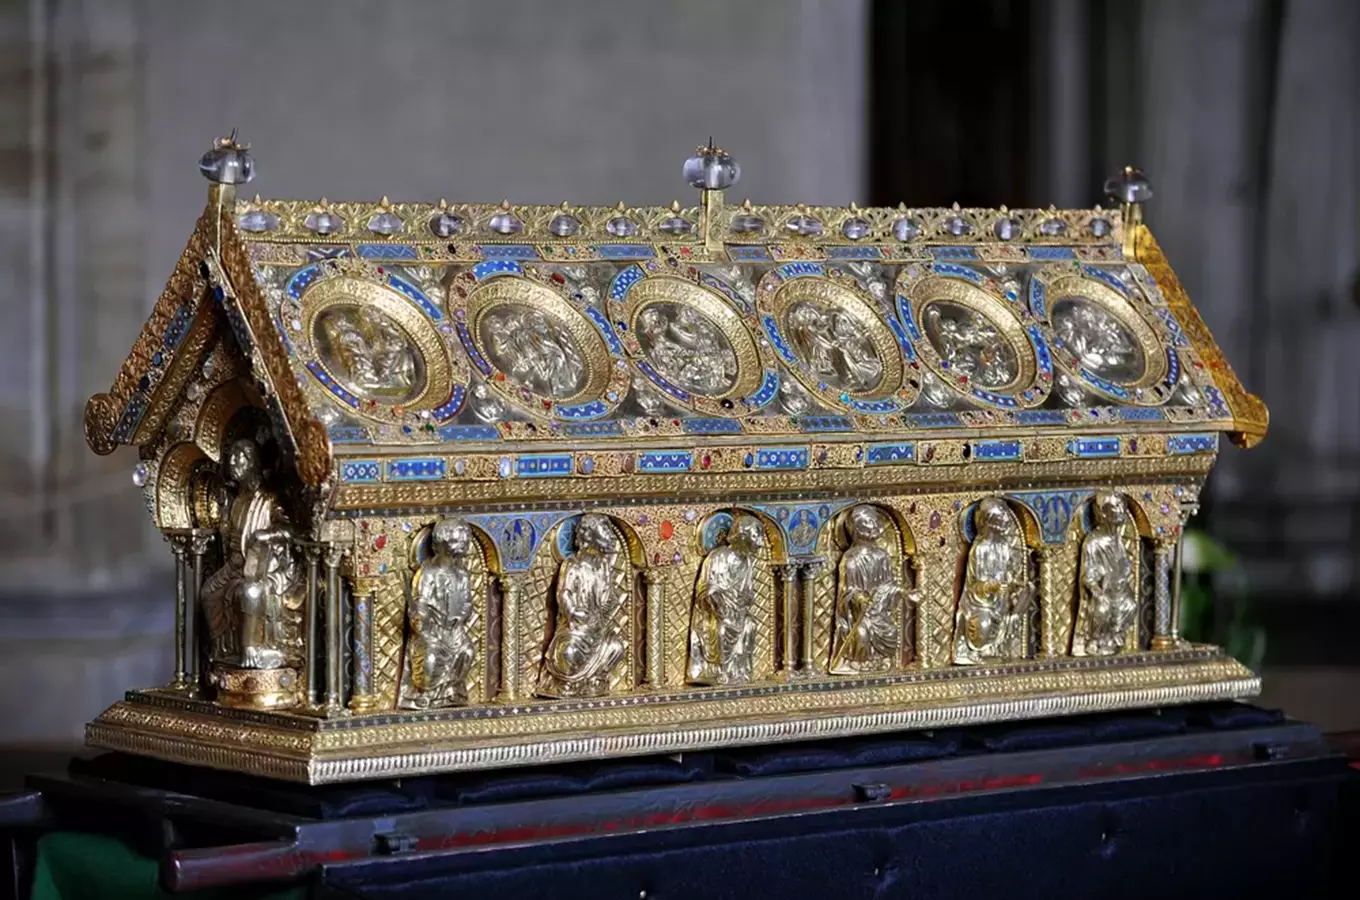 Beaufort-Spontin – šlechtický rod, který do českých zemí přivezl relikviář svatého Maura